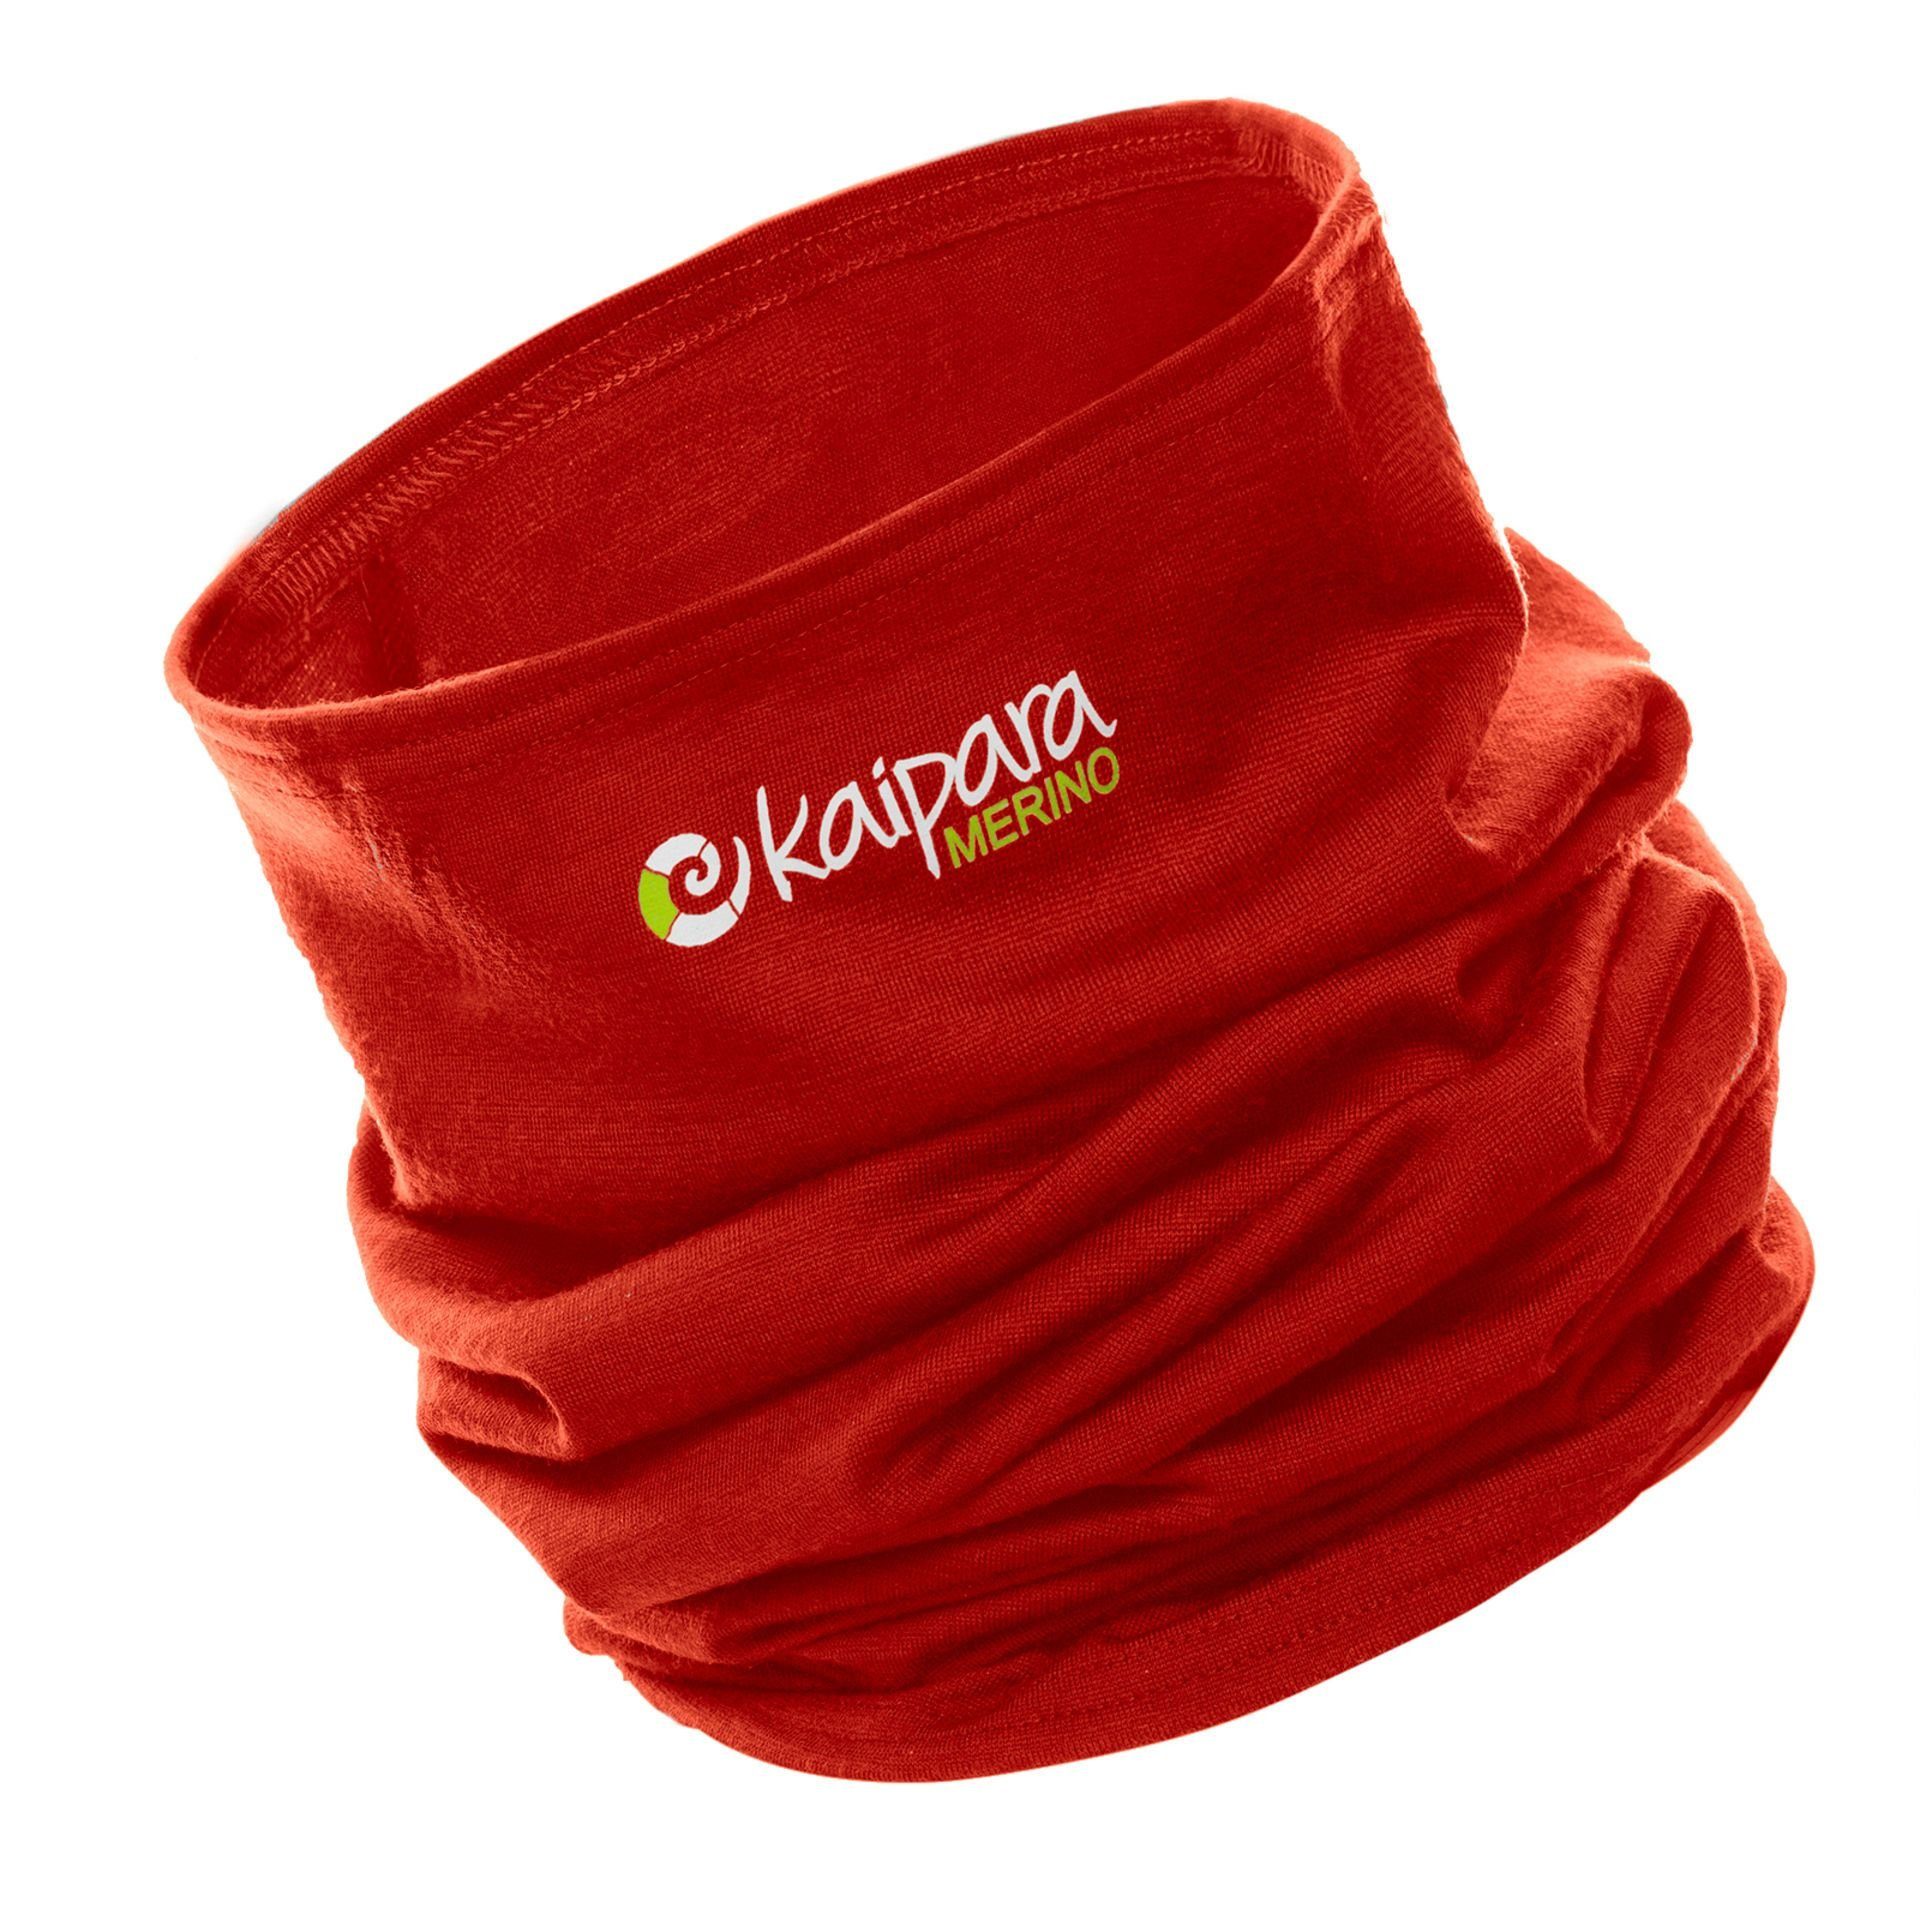 Germany in Cherry Merino Red Schal Unisex Merino Kaipara aus Merinowolle - reiner Sportswear 200, Made Bandana